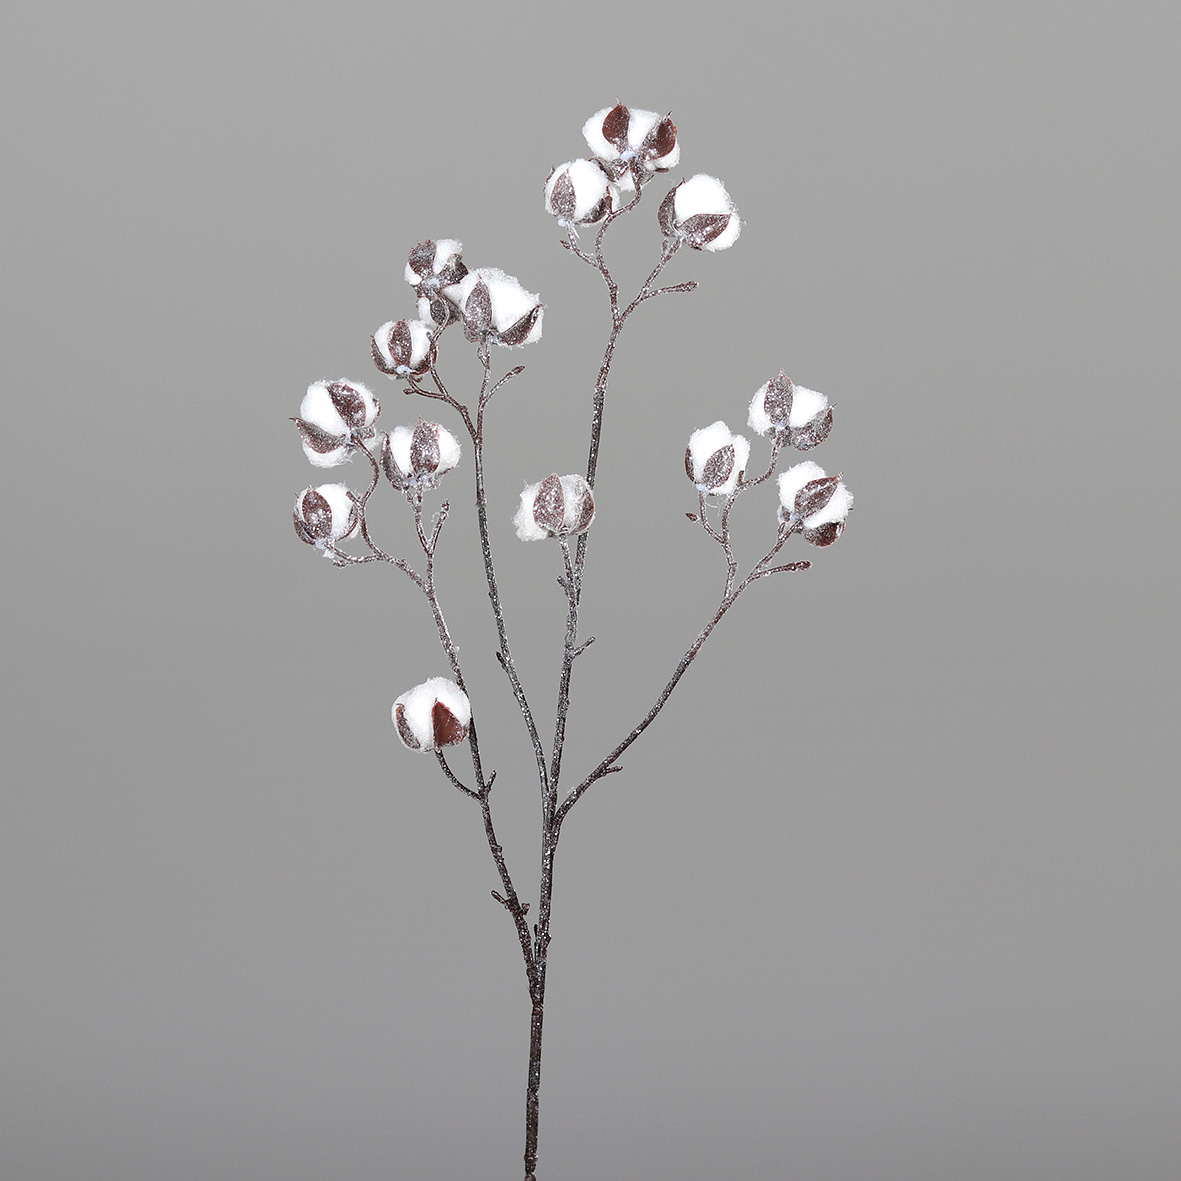 Baumwollzweig geeist 80cm DP Kunstpflanzen künstliche Blumen Pflanzen Baumwolle